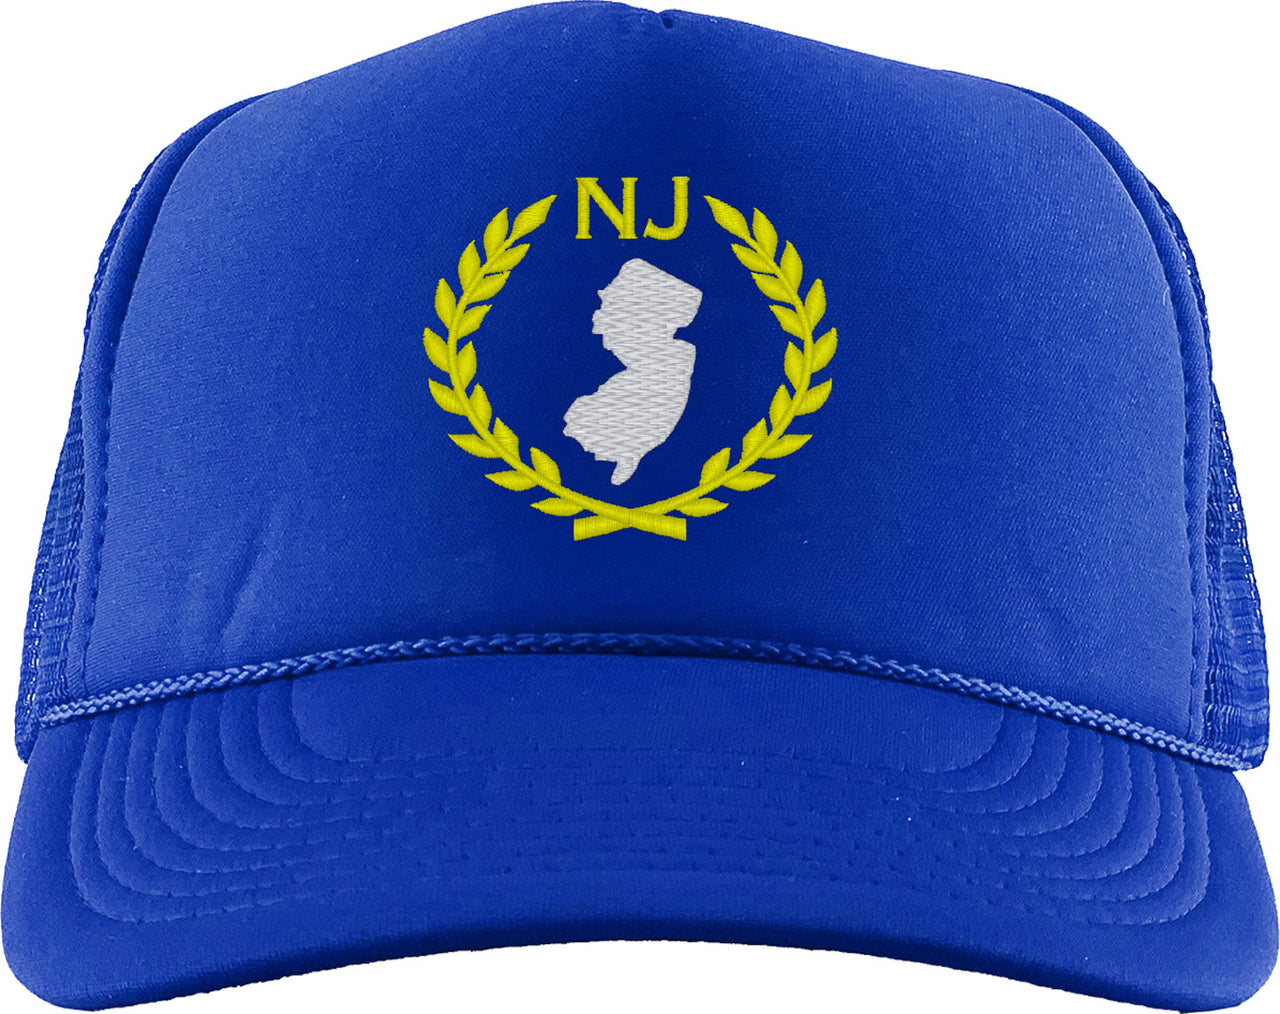 New Jersey State Foam Trucker Hat